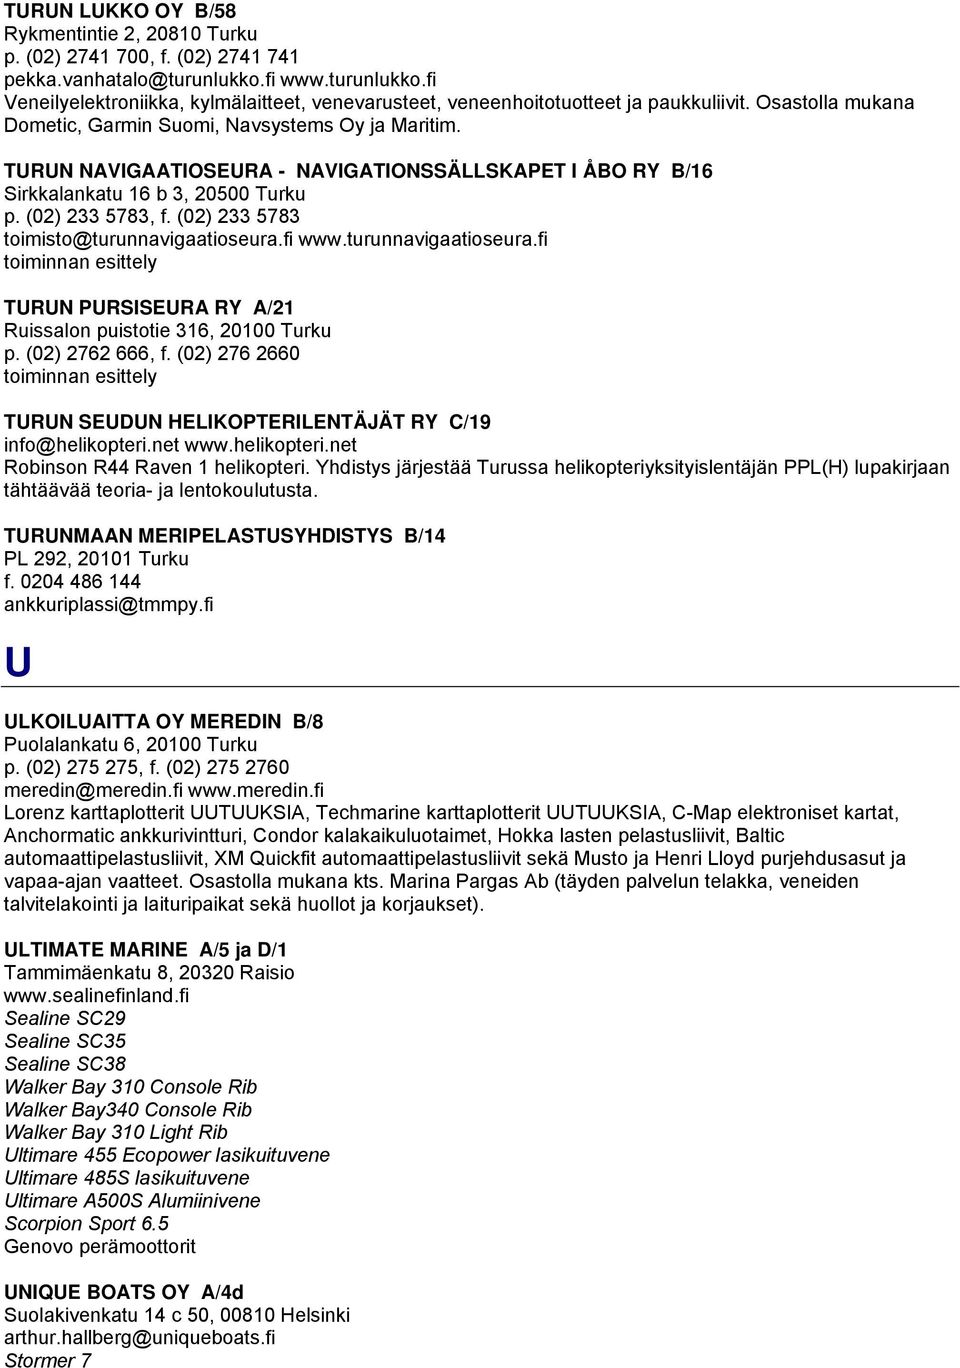 TURUN NAVIGAATIOSEURA - NAVIGATIONSSÄLLSKAPET I ÅBO RY B/16 Sirkkalankatu 16 b 3, 20500 Turku p. (02) 233 5783, f. (02) 233 5783 toimisto@turunnavigaatioseura.